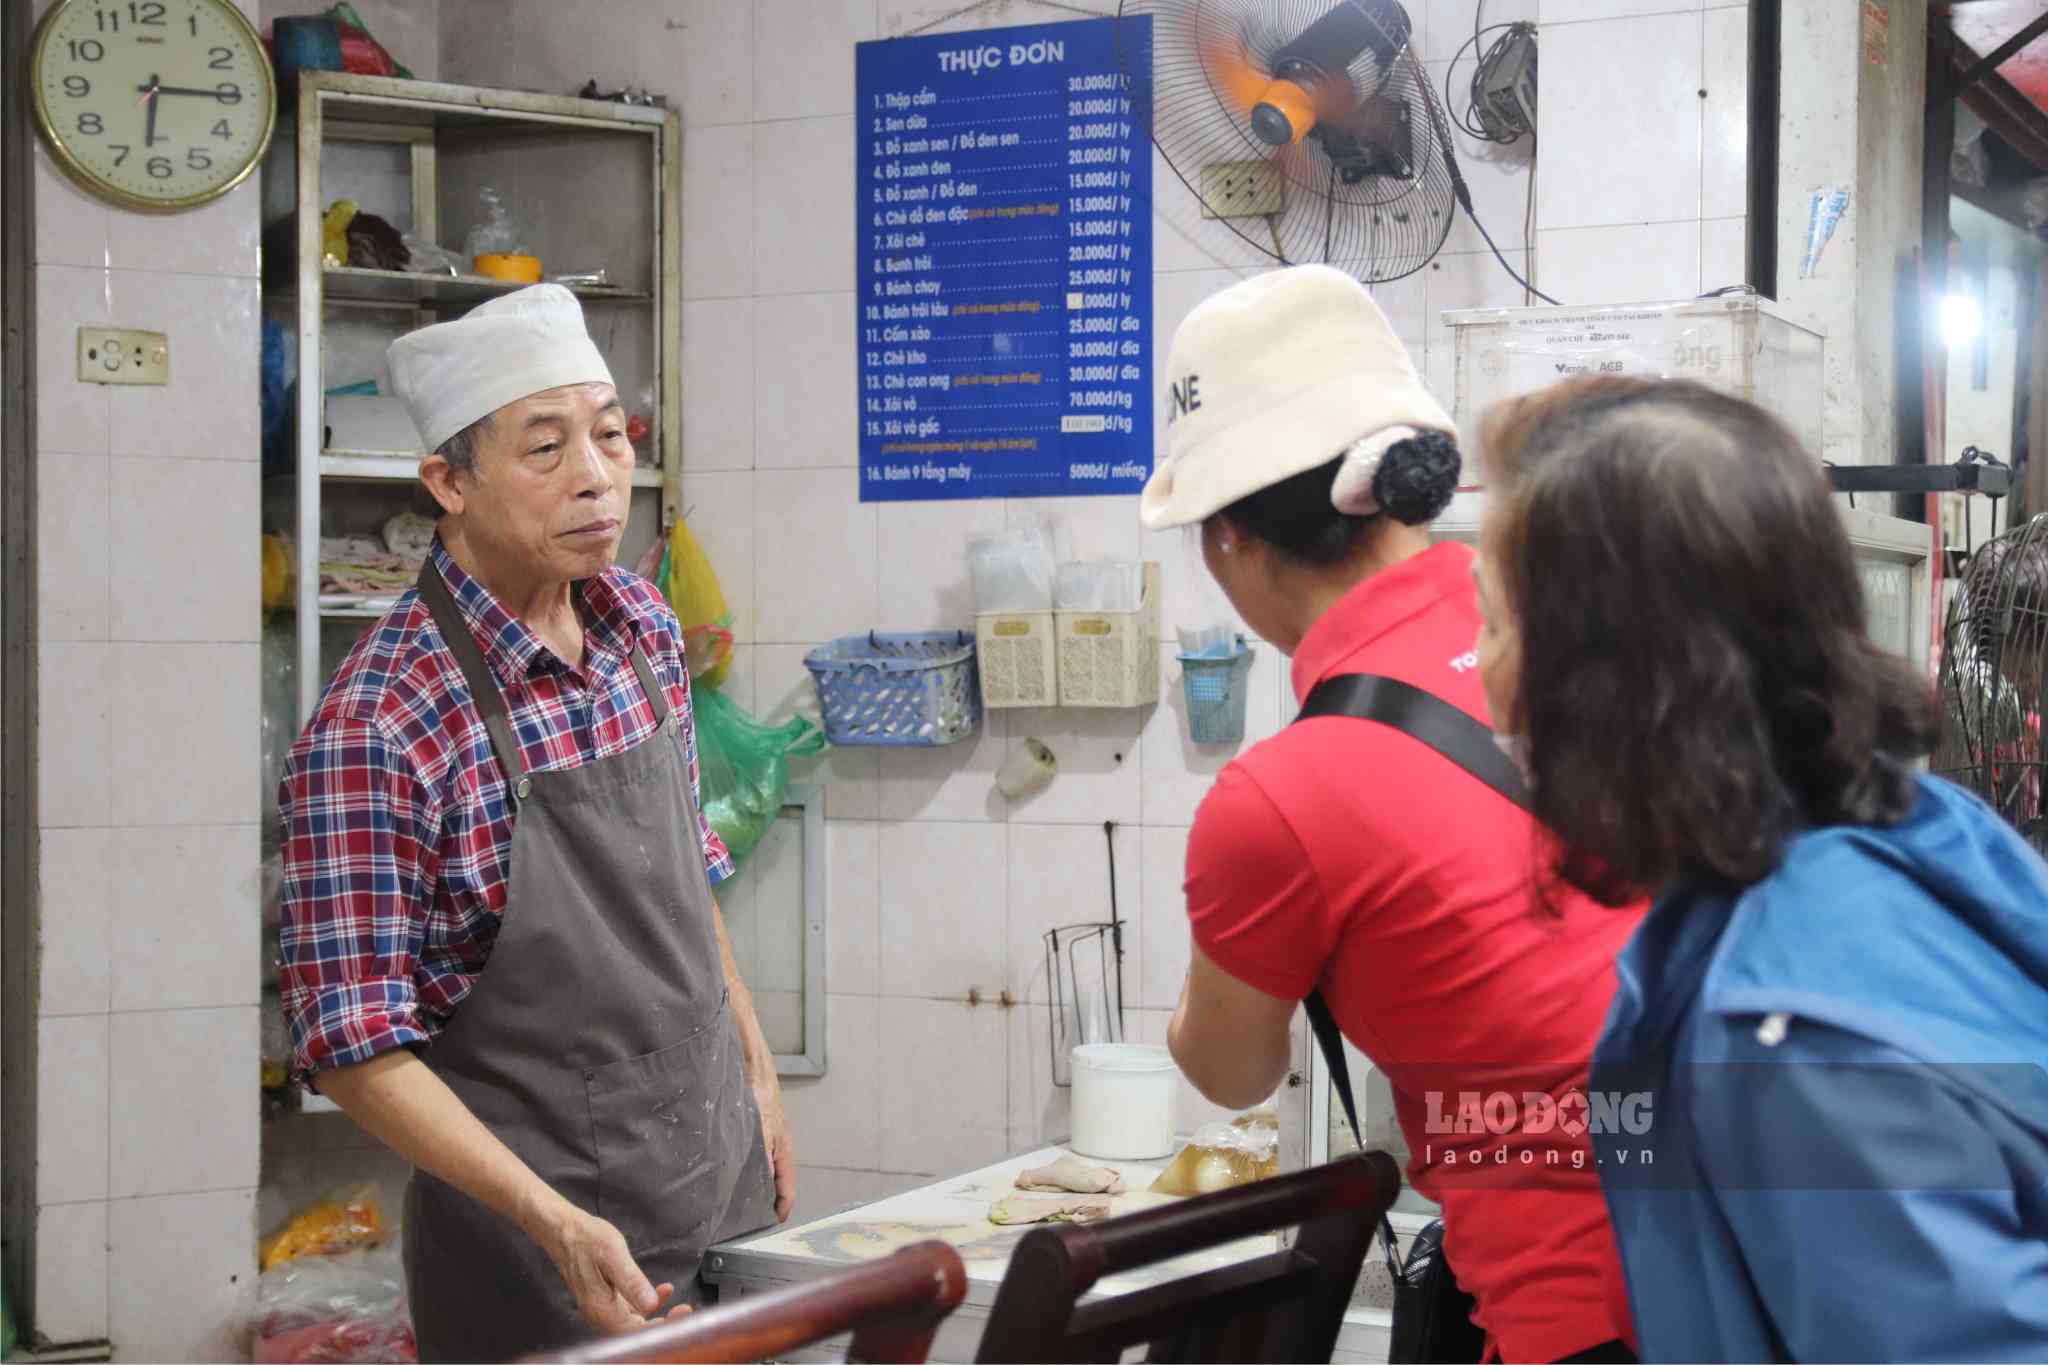 Chủ cửa hàng bán bánh trôi, bánh chay trên phố Ngô Thì Nhậm cho biết, gia đình ông đã chuẩn bị cả tạ bột, huy động tới 10 nhân lực để chuẩn bị bánh phục vụ nhu cầu của người dân. 